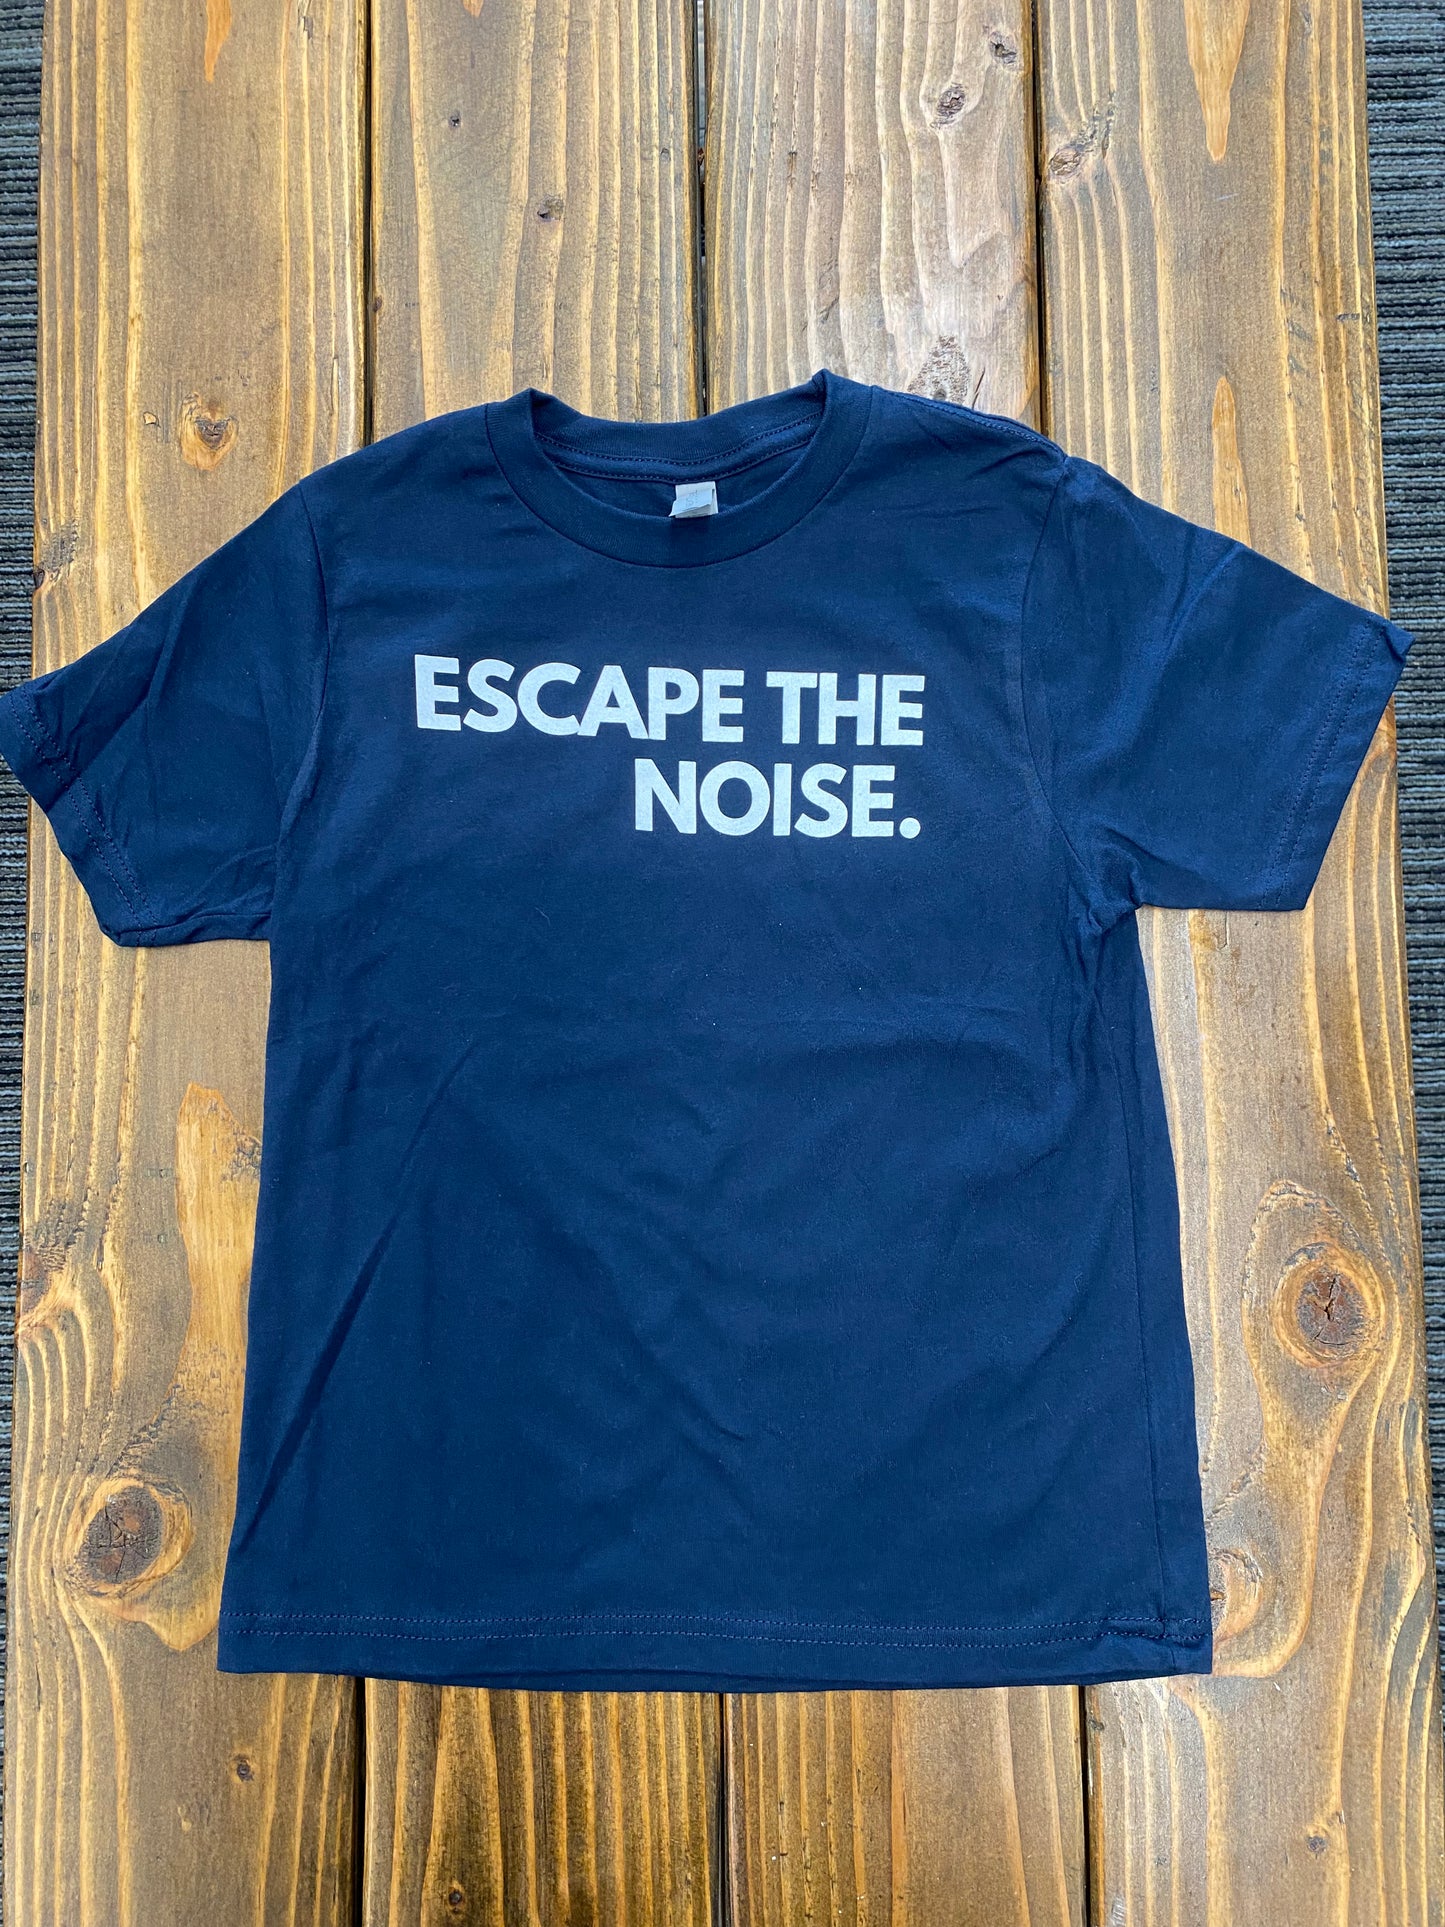 Escape the Noise. - Kids' T-shirt